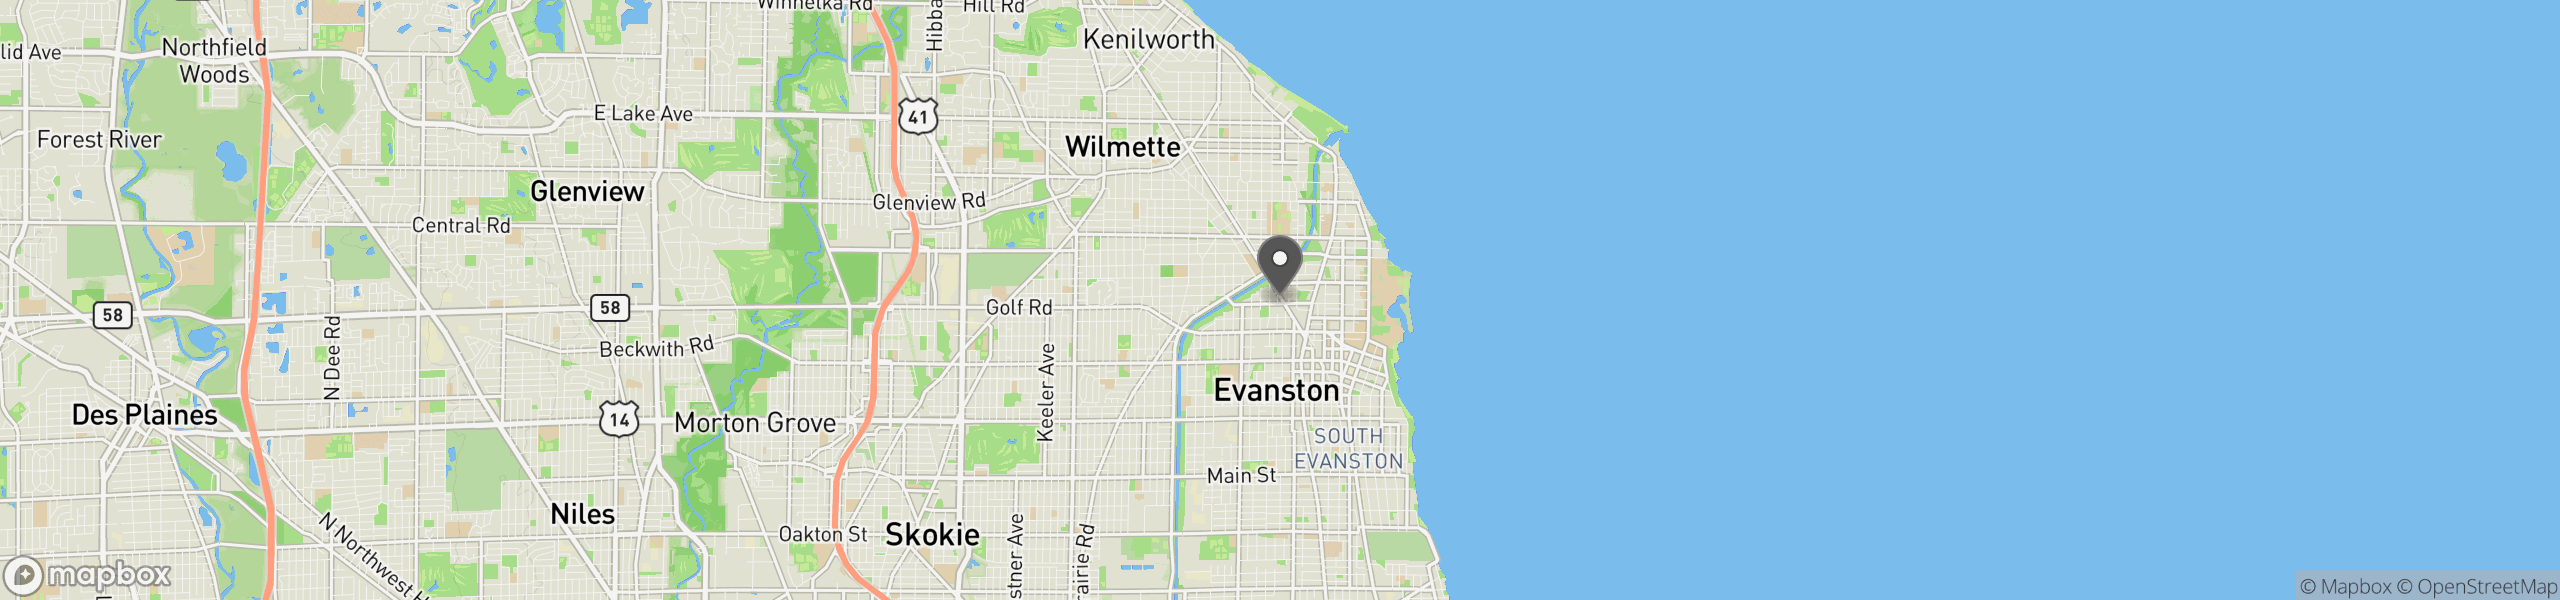 Evanston, IL 60201